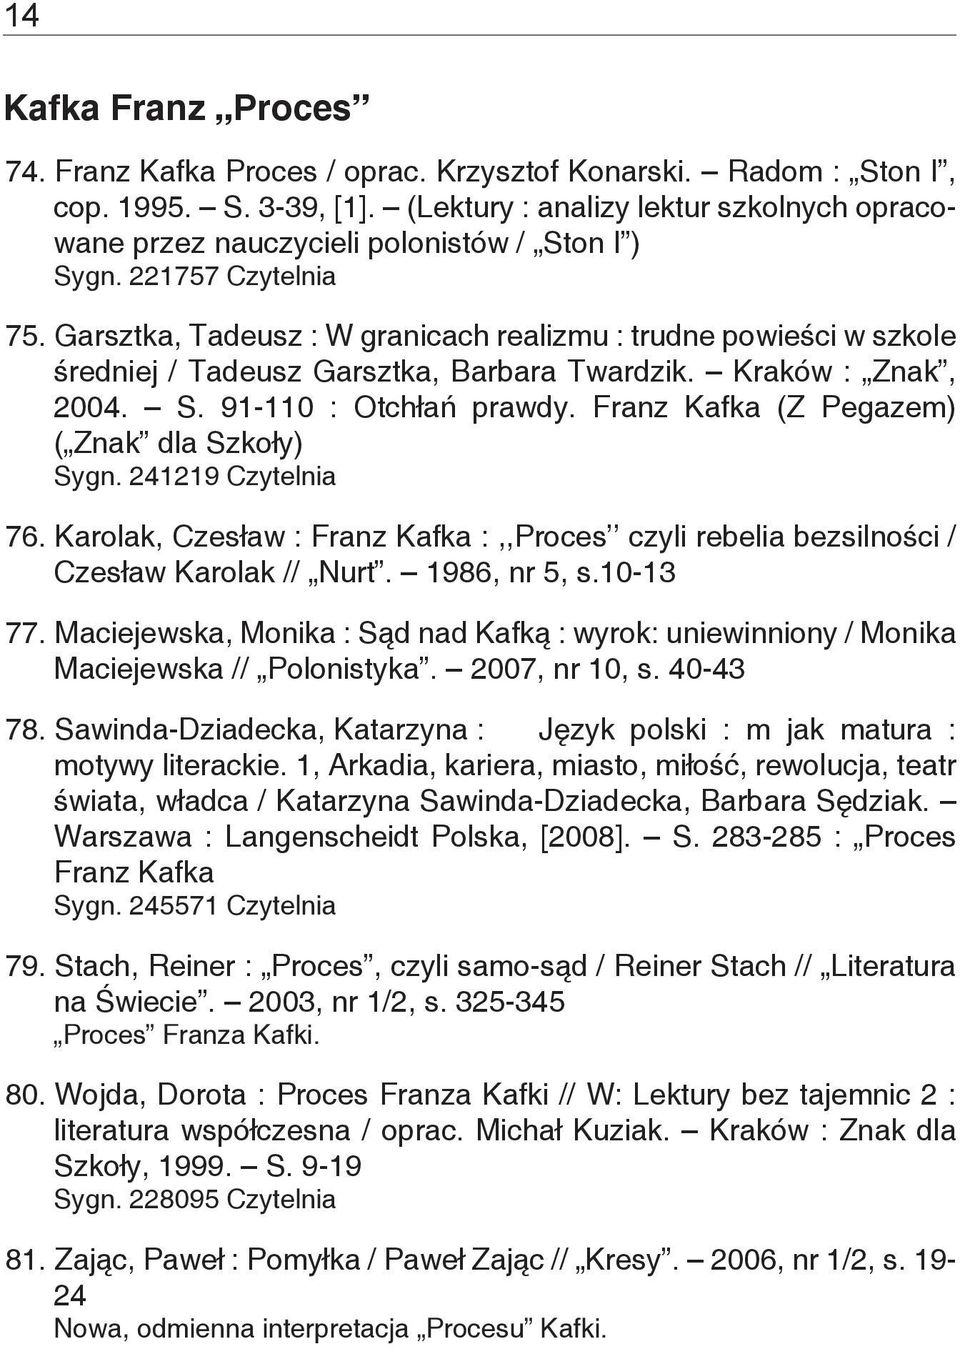 Garsztka, Tadeusz : W granicach realizmu : trudne powieści w szkole średniej / Tadeusz Garsztka, Barbara Twardzik. Kraków : Znak, 2004. S. 91-110 : Otchłań prawdy.